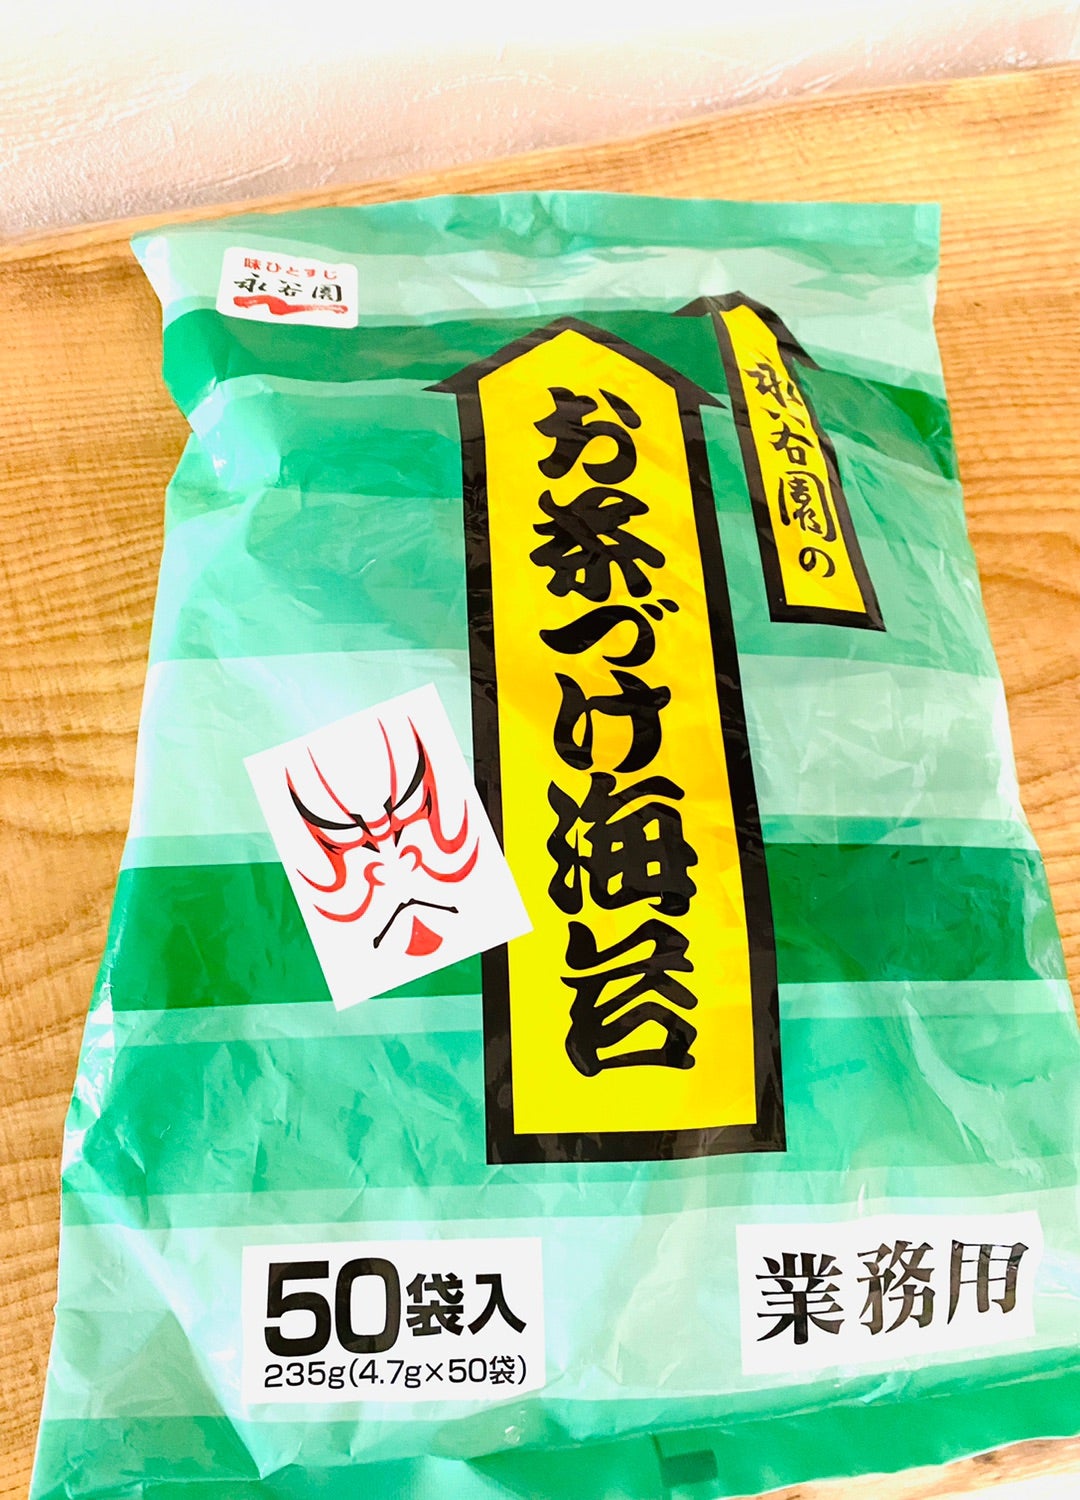 永谷園 お茶漬け 海苔 業務用 50袋入・235g(4.7g×50袋)